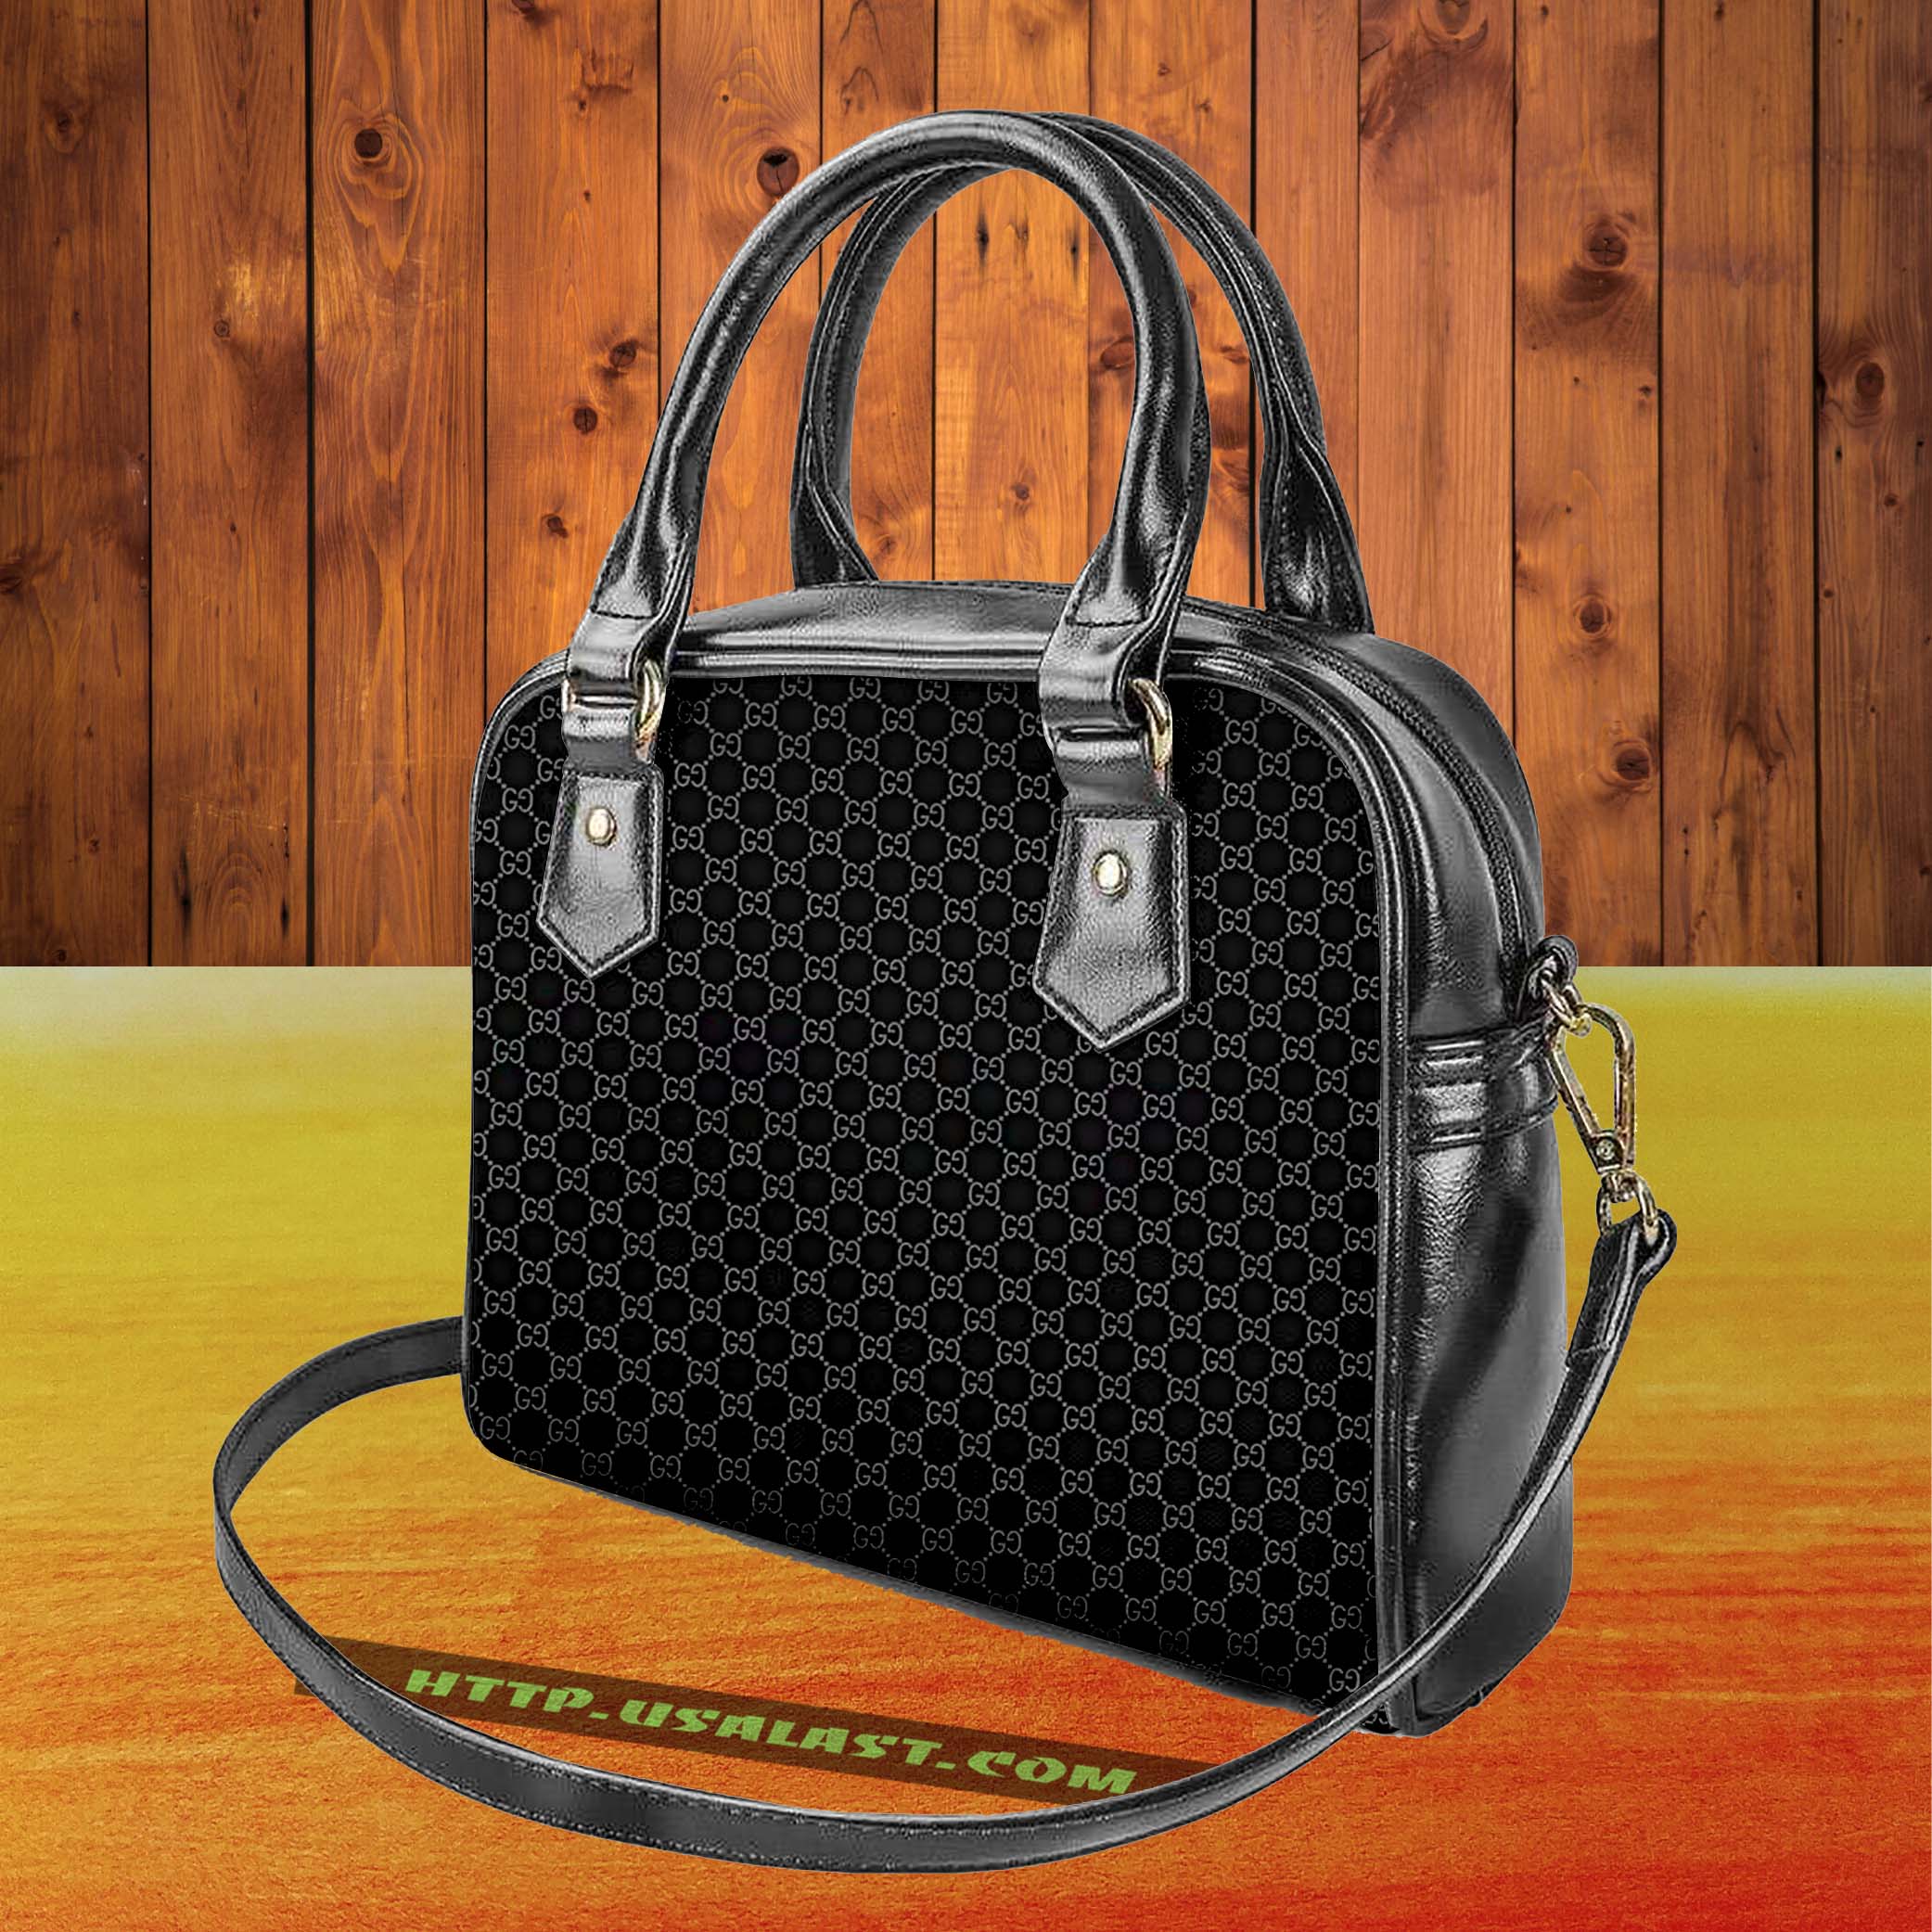 zhe9zFT4-T080322-013xxxGucci-Logo-Luxury-Brand-Shoulder-Handbag-V1.jpg